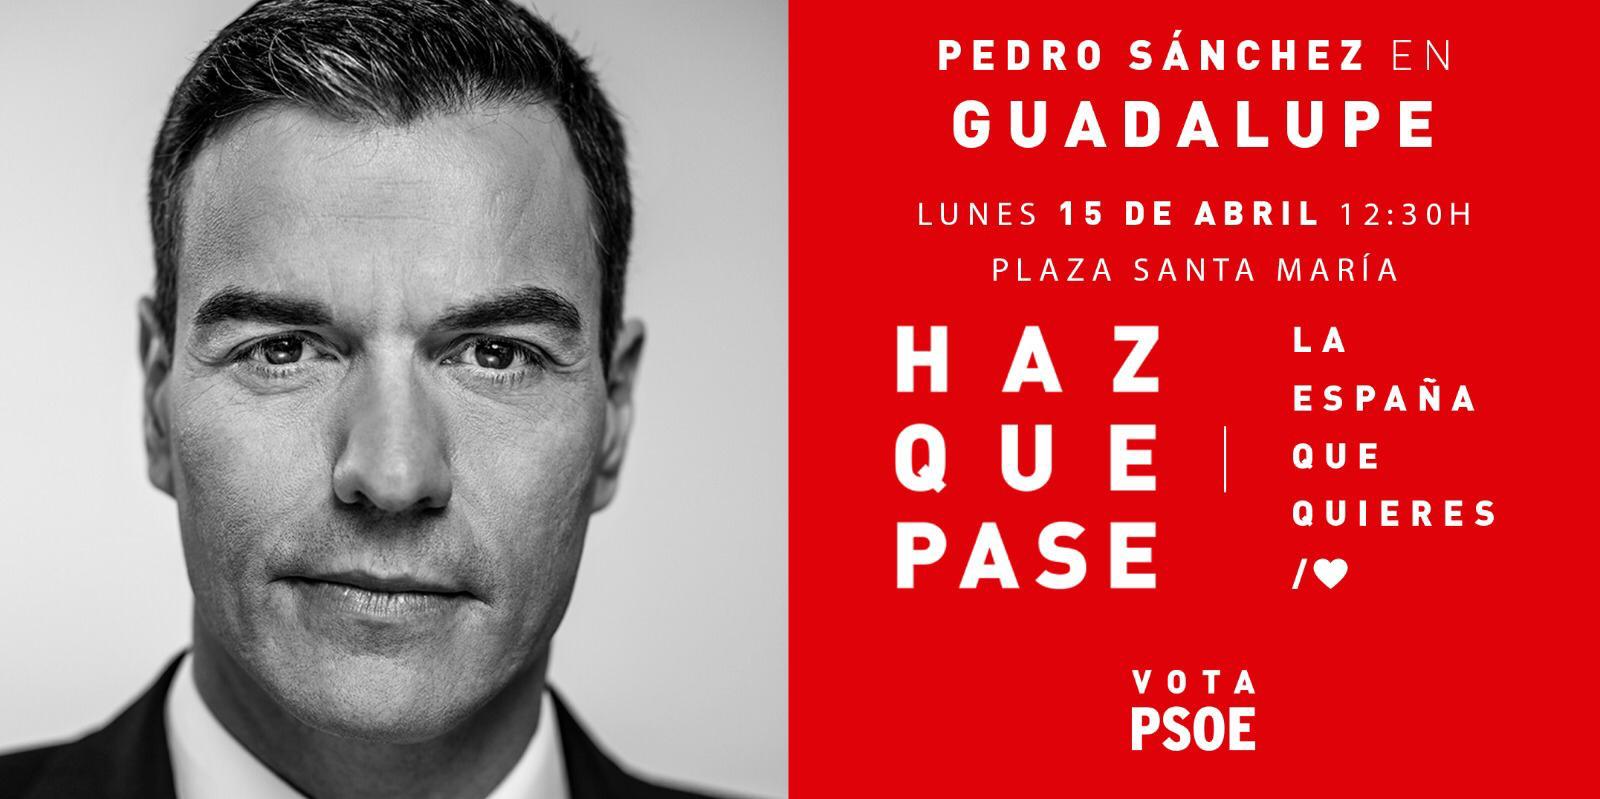 Pedro Sánchez en Guadalupe abril 2019